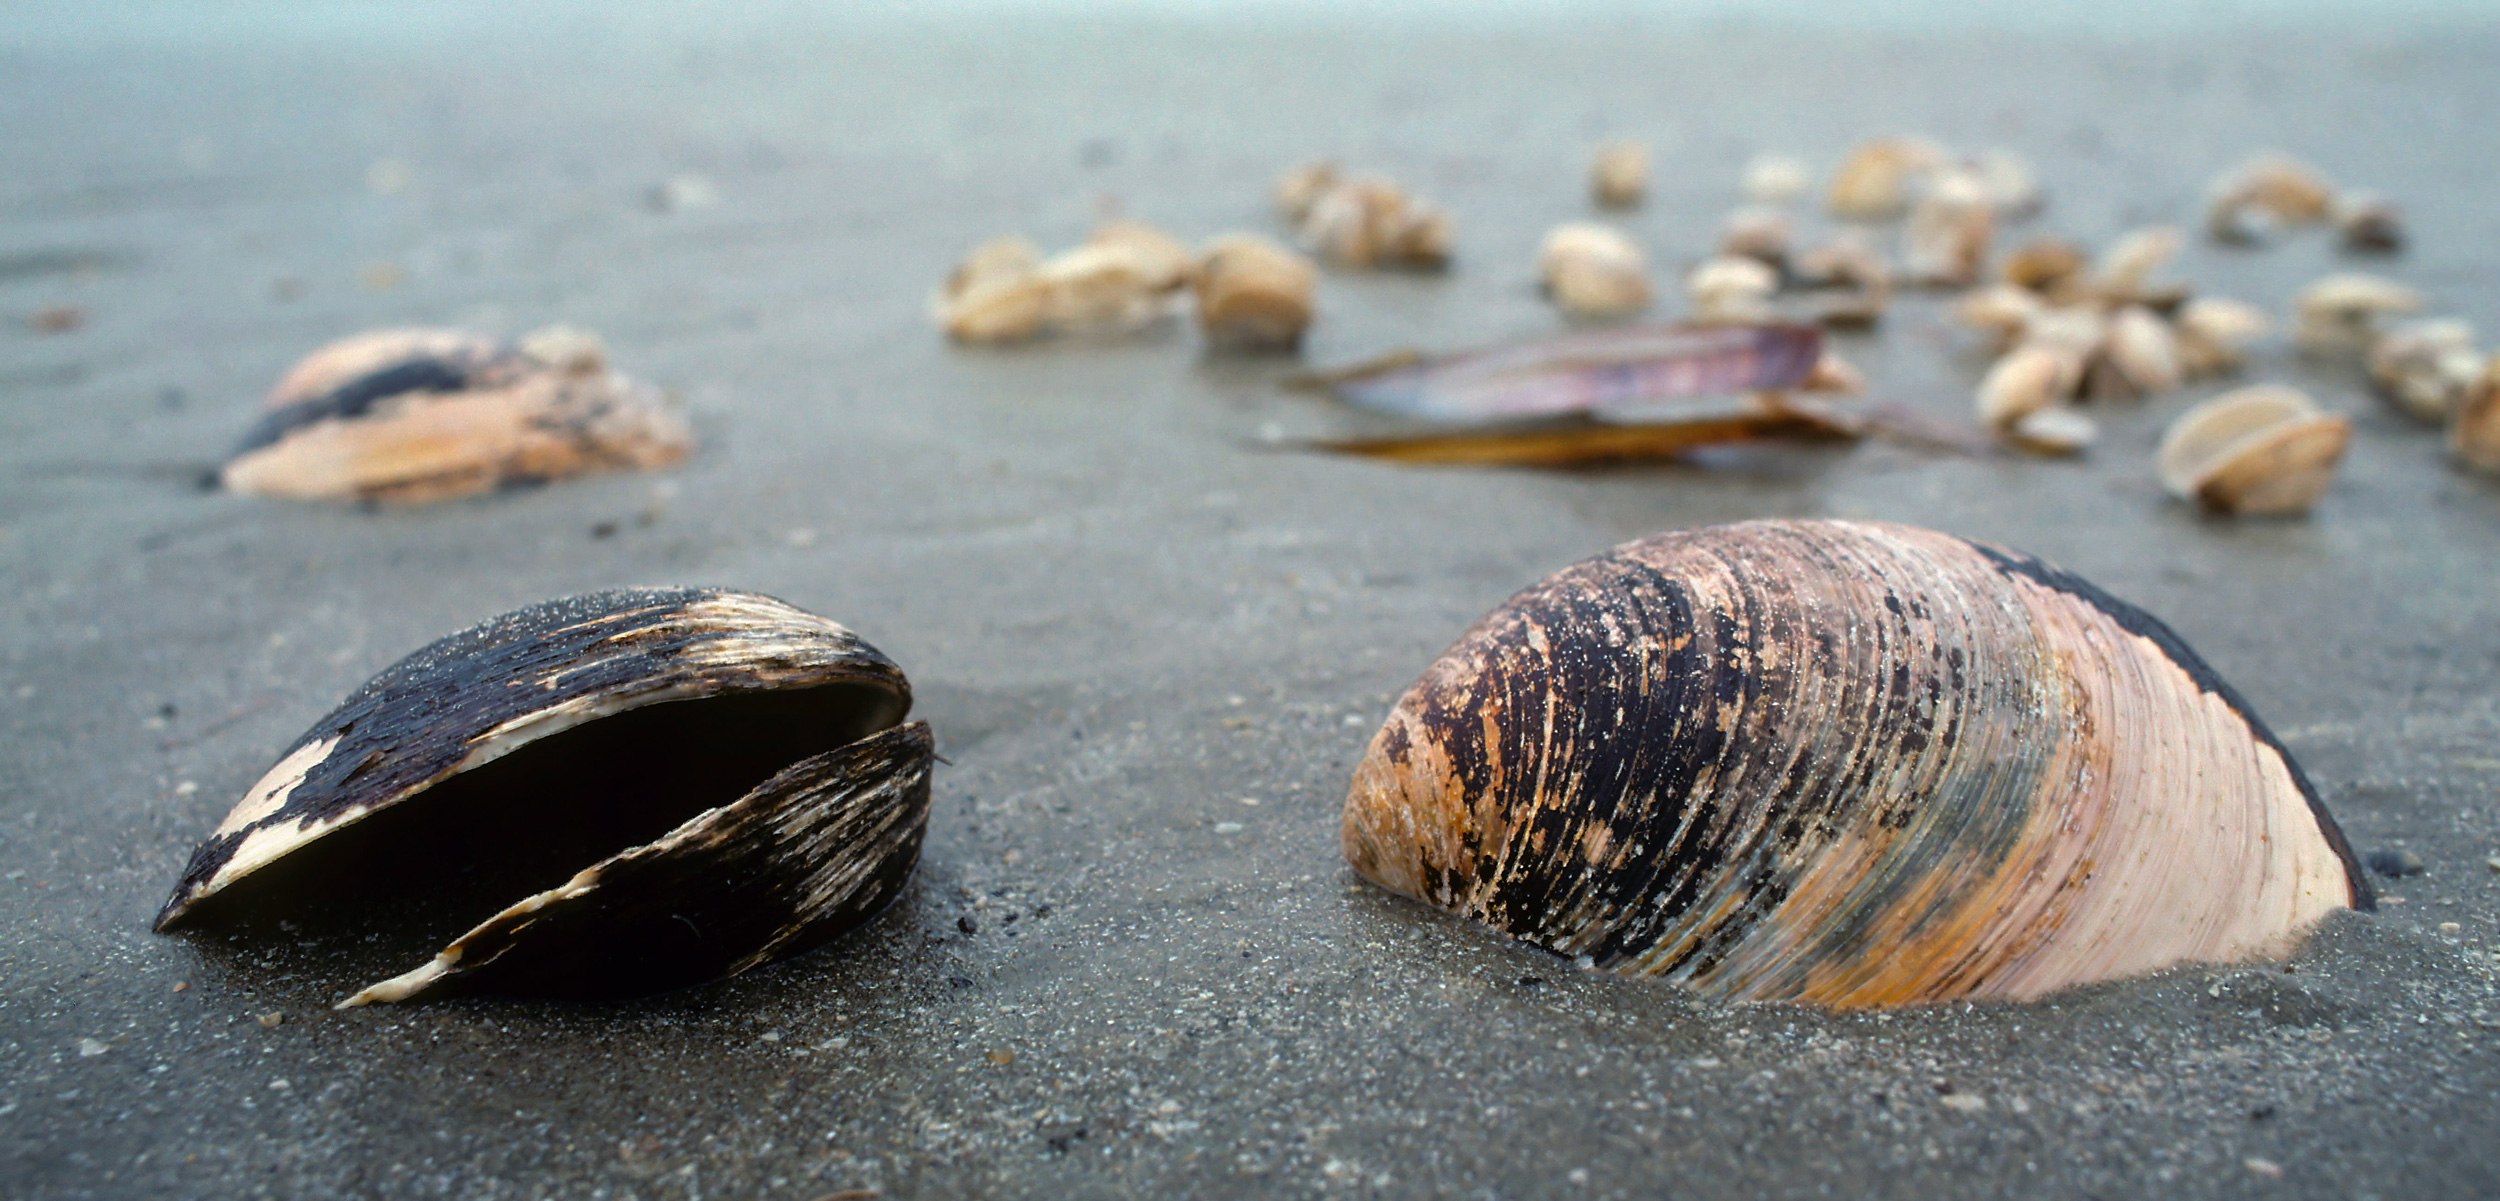 ocean quahog shells on the beach